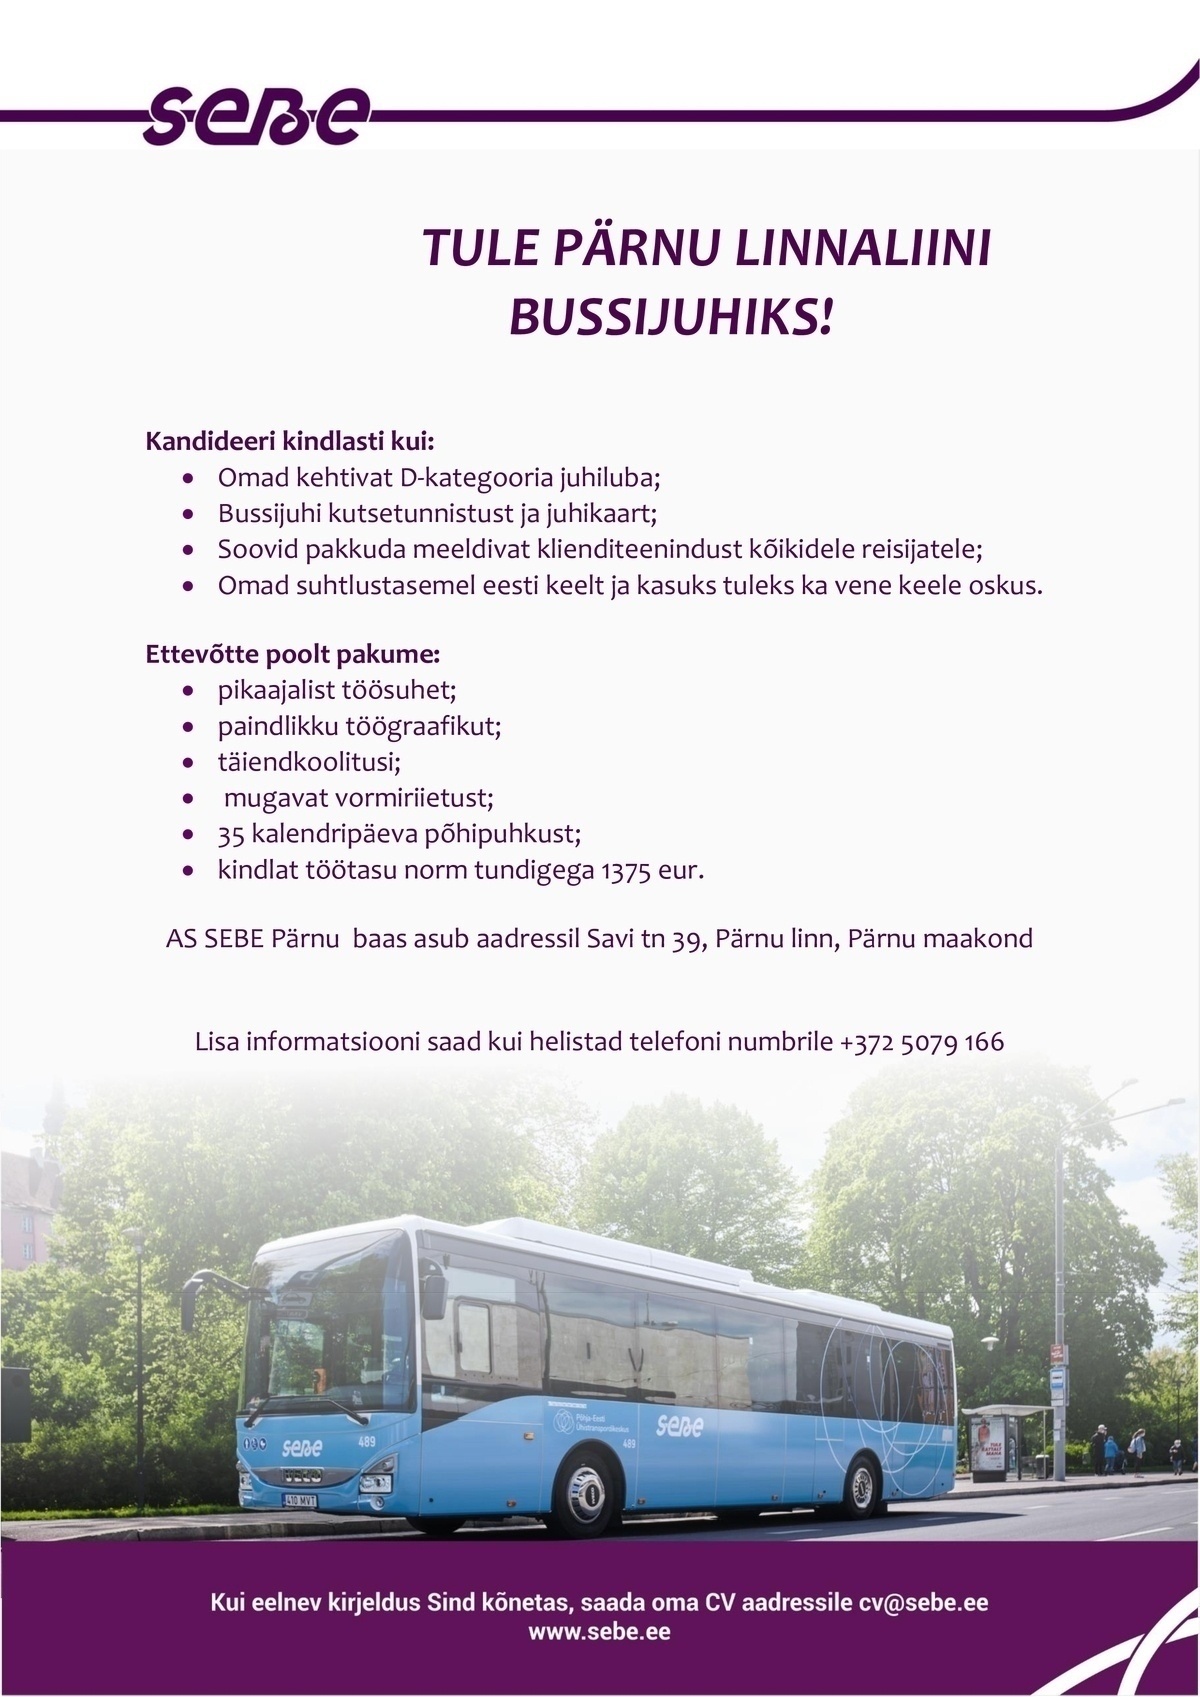 Sebe AS Pärnu linnaliinide bussijuht